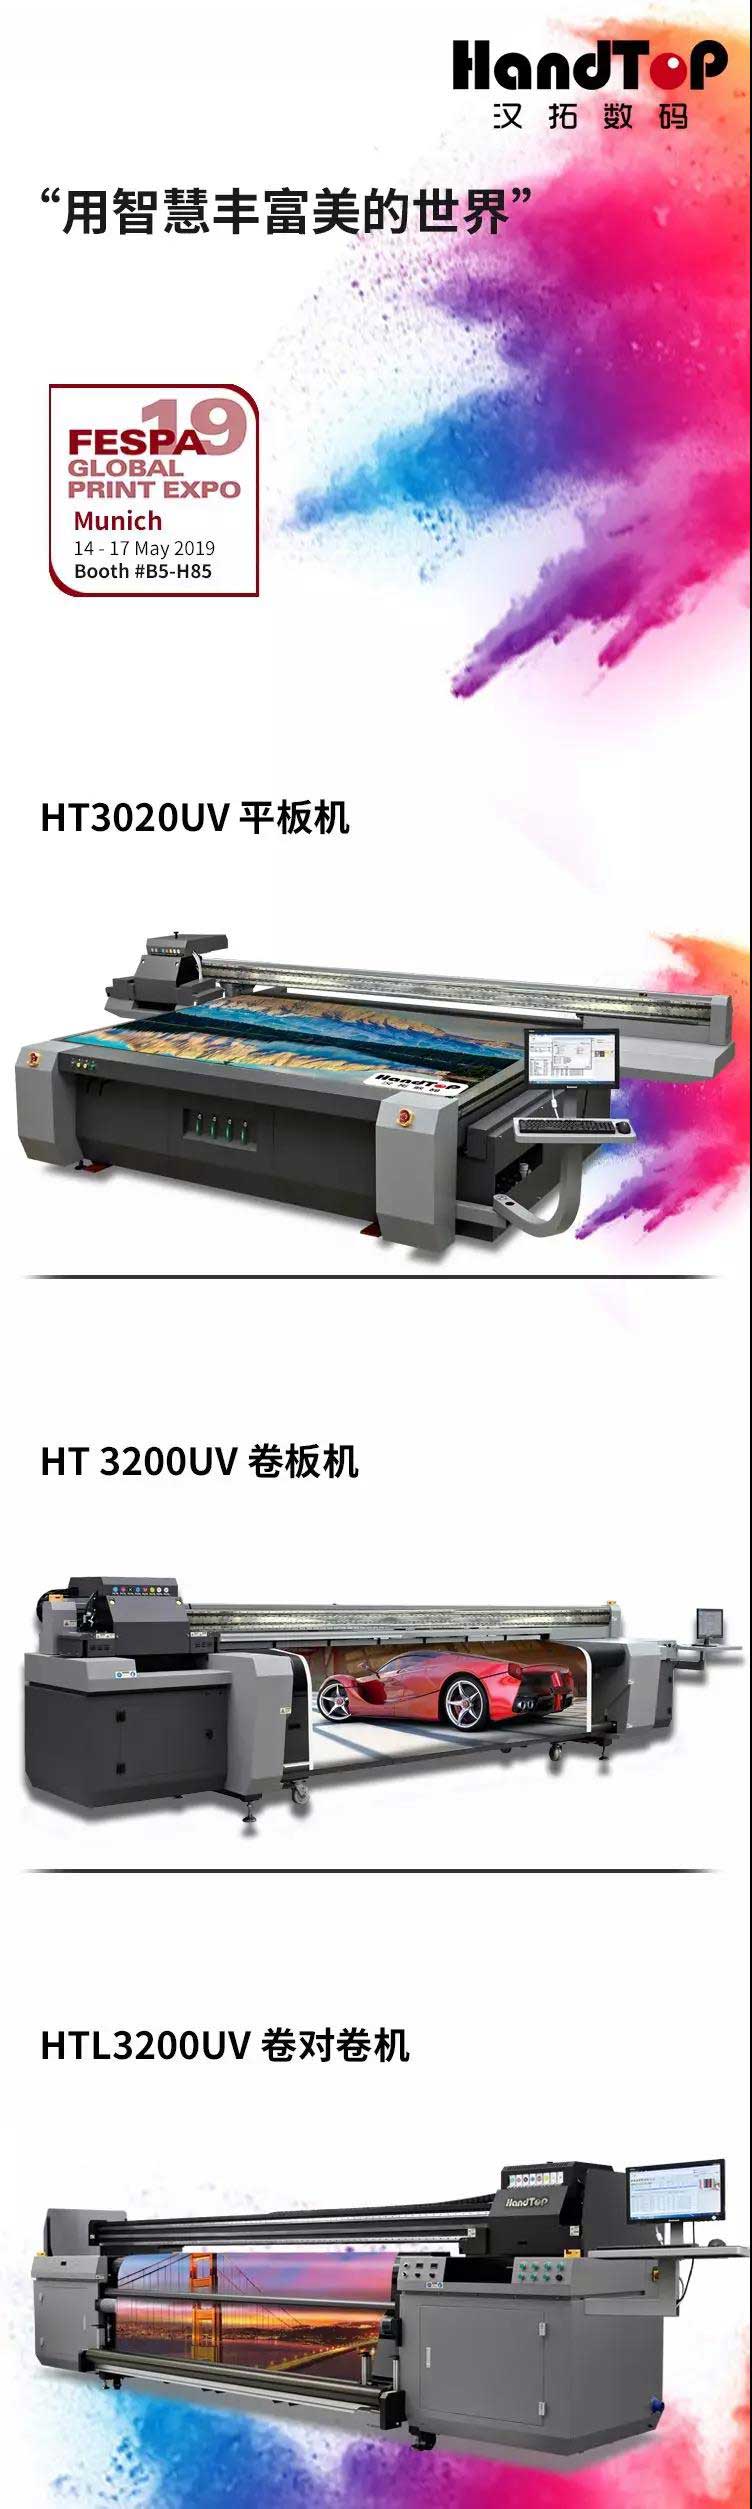 HT3200UV打印机